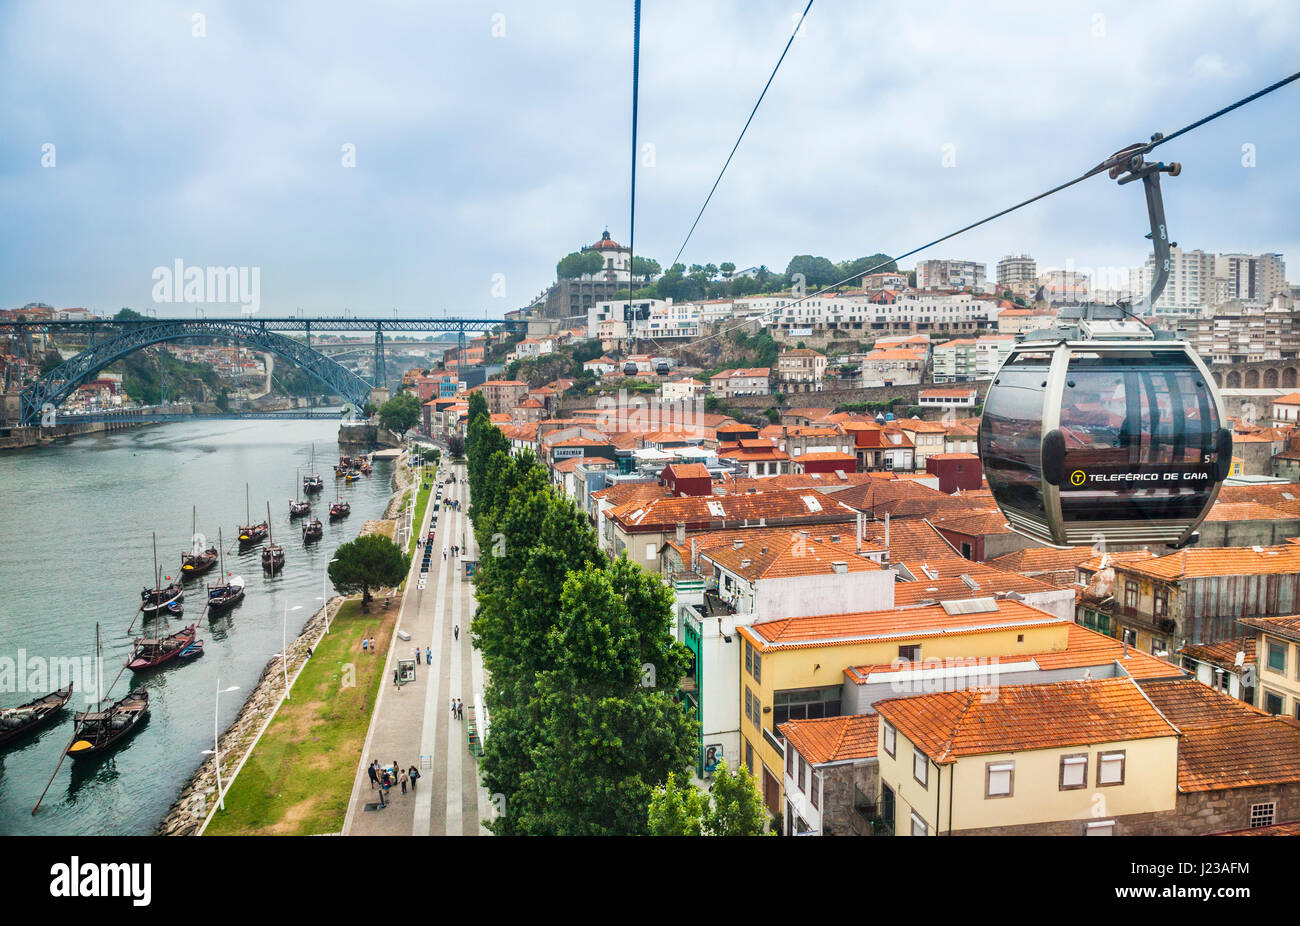 Portugal, région Norte, Porto, le Teleférico de Gaia téléphériques travers sur les toits de Vila Nova de Gaia's lodges portwine et entrepôts (grottes) Banque D'Images